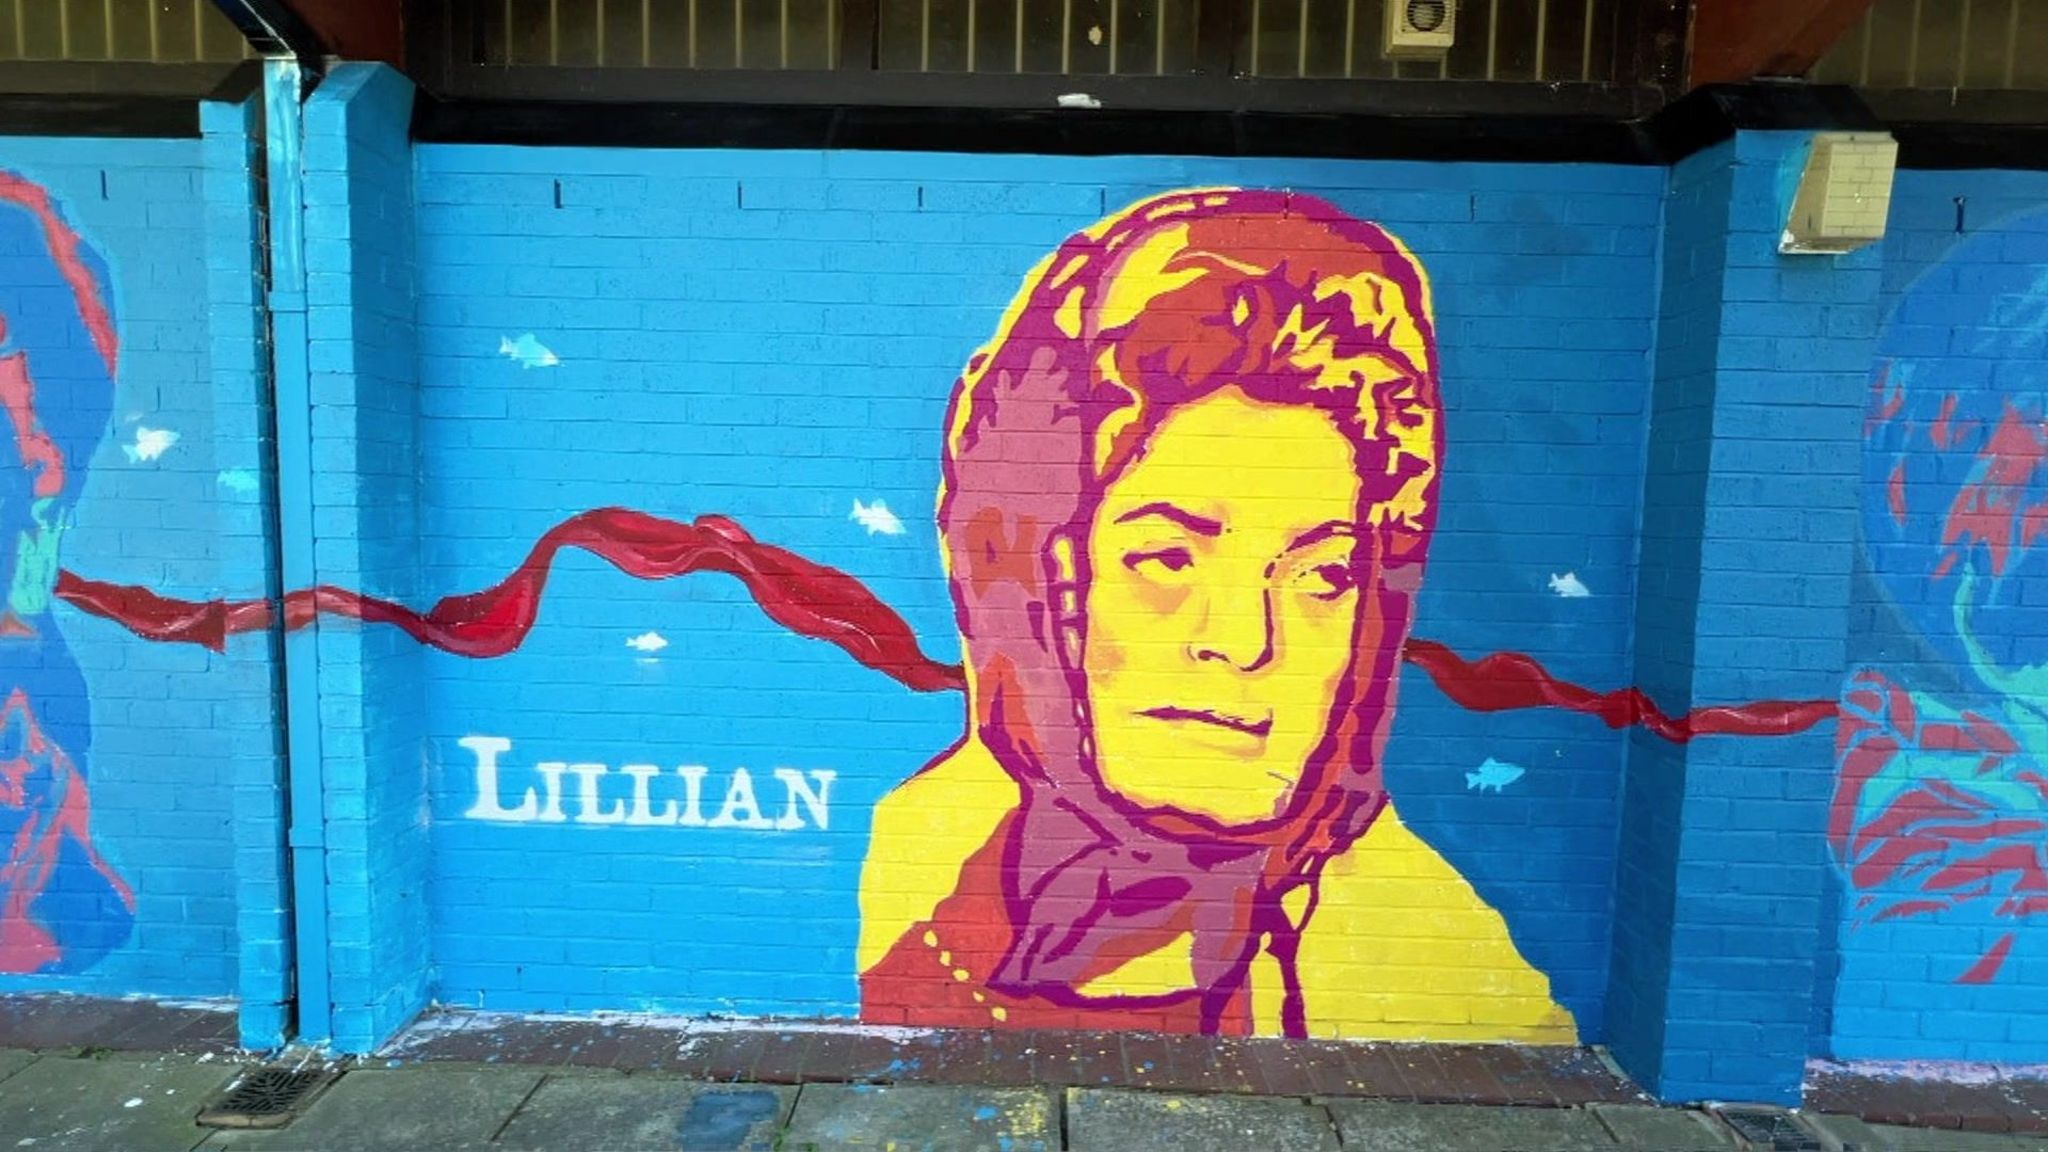 Mural of Lillian Bilocca